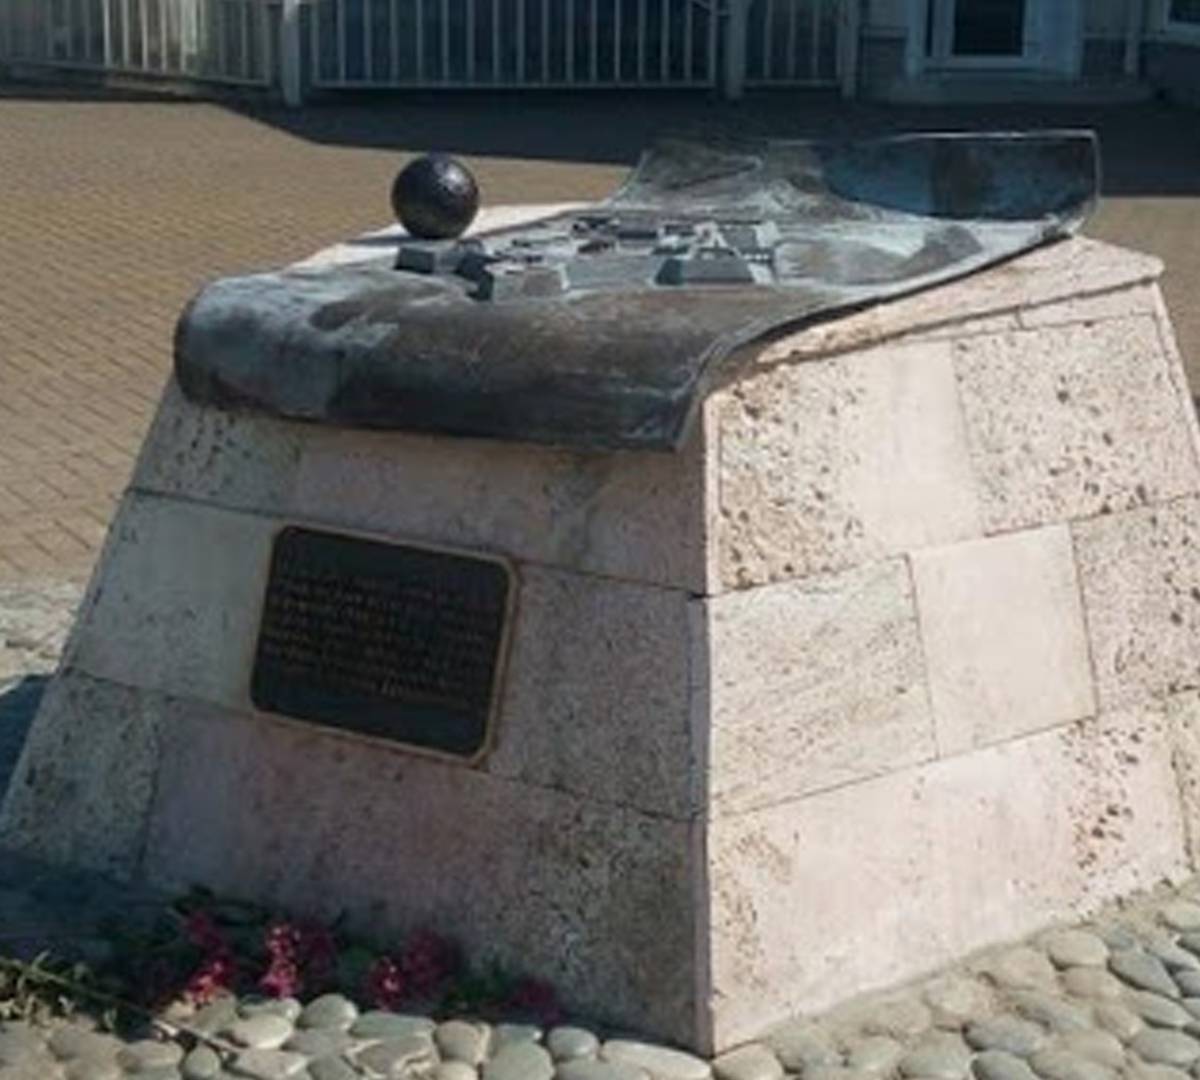 Власть «не заметила» сноса мемориала русским солдатам в Сочи